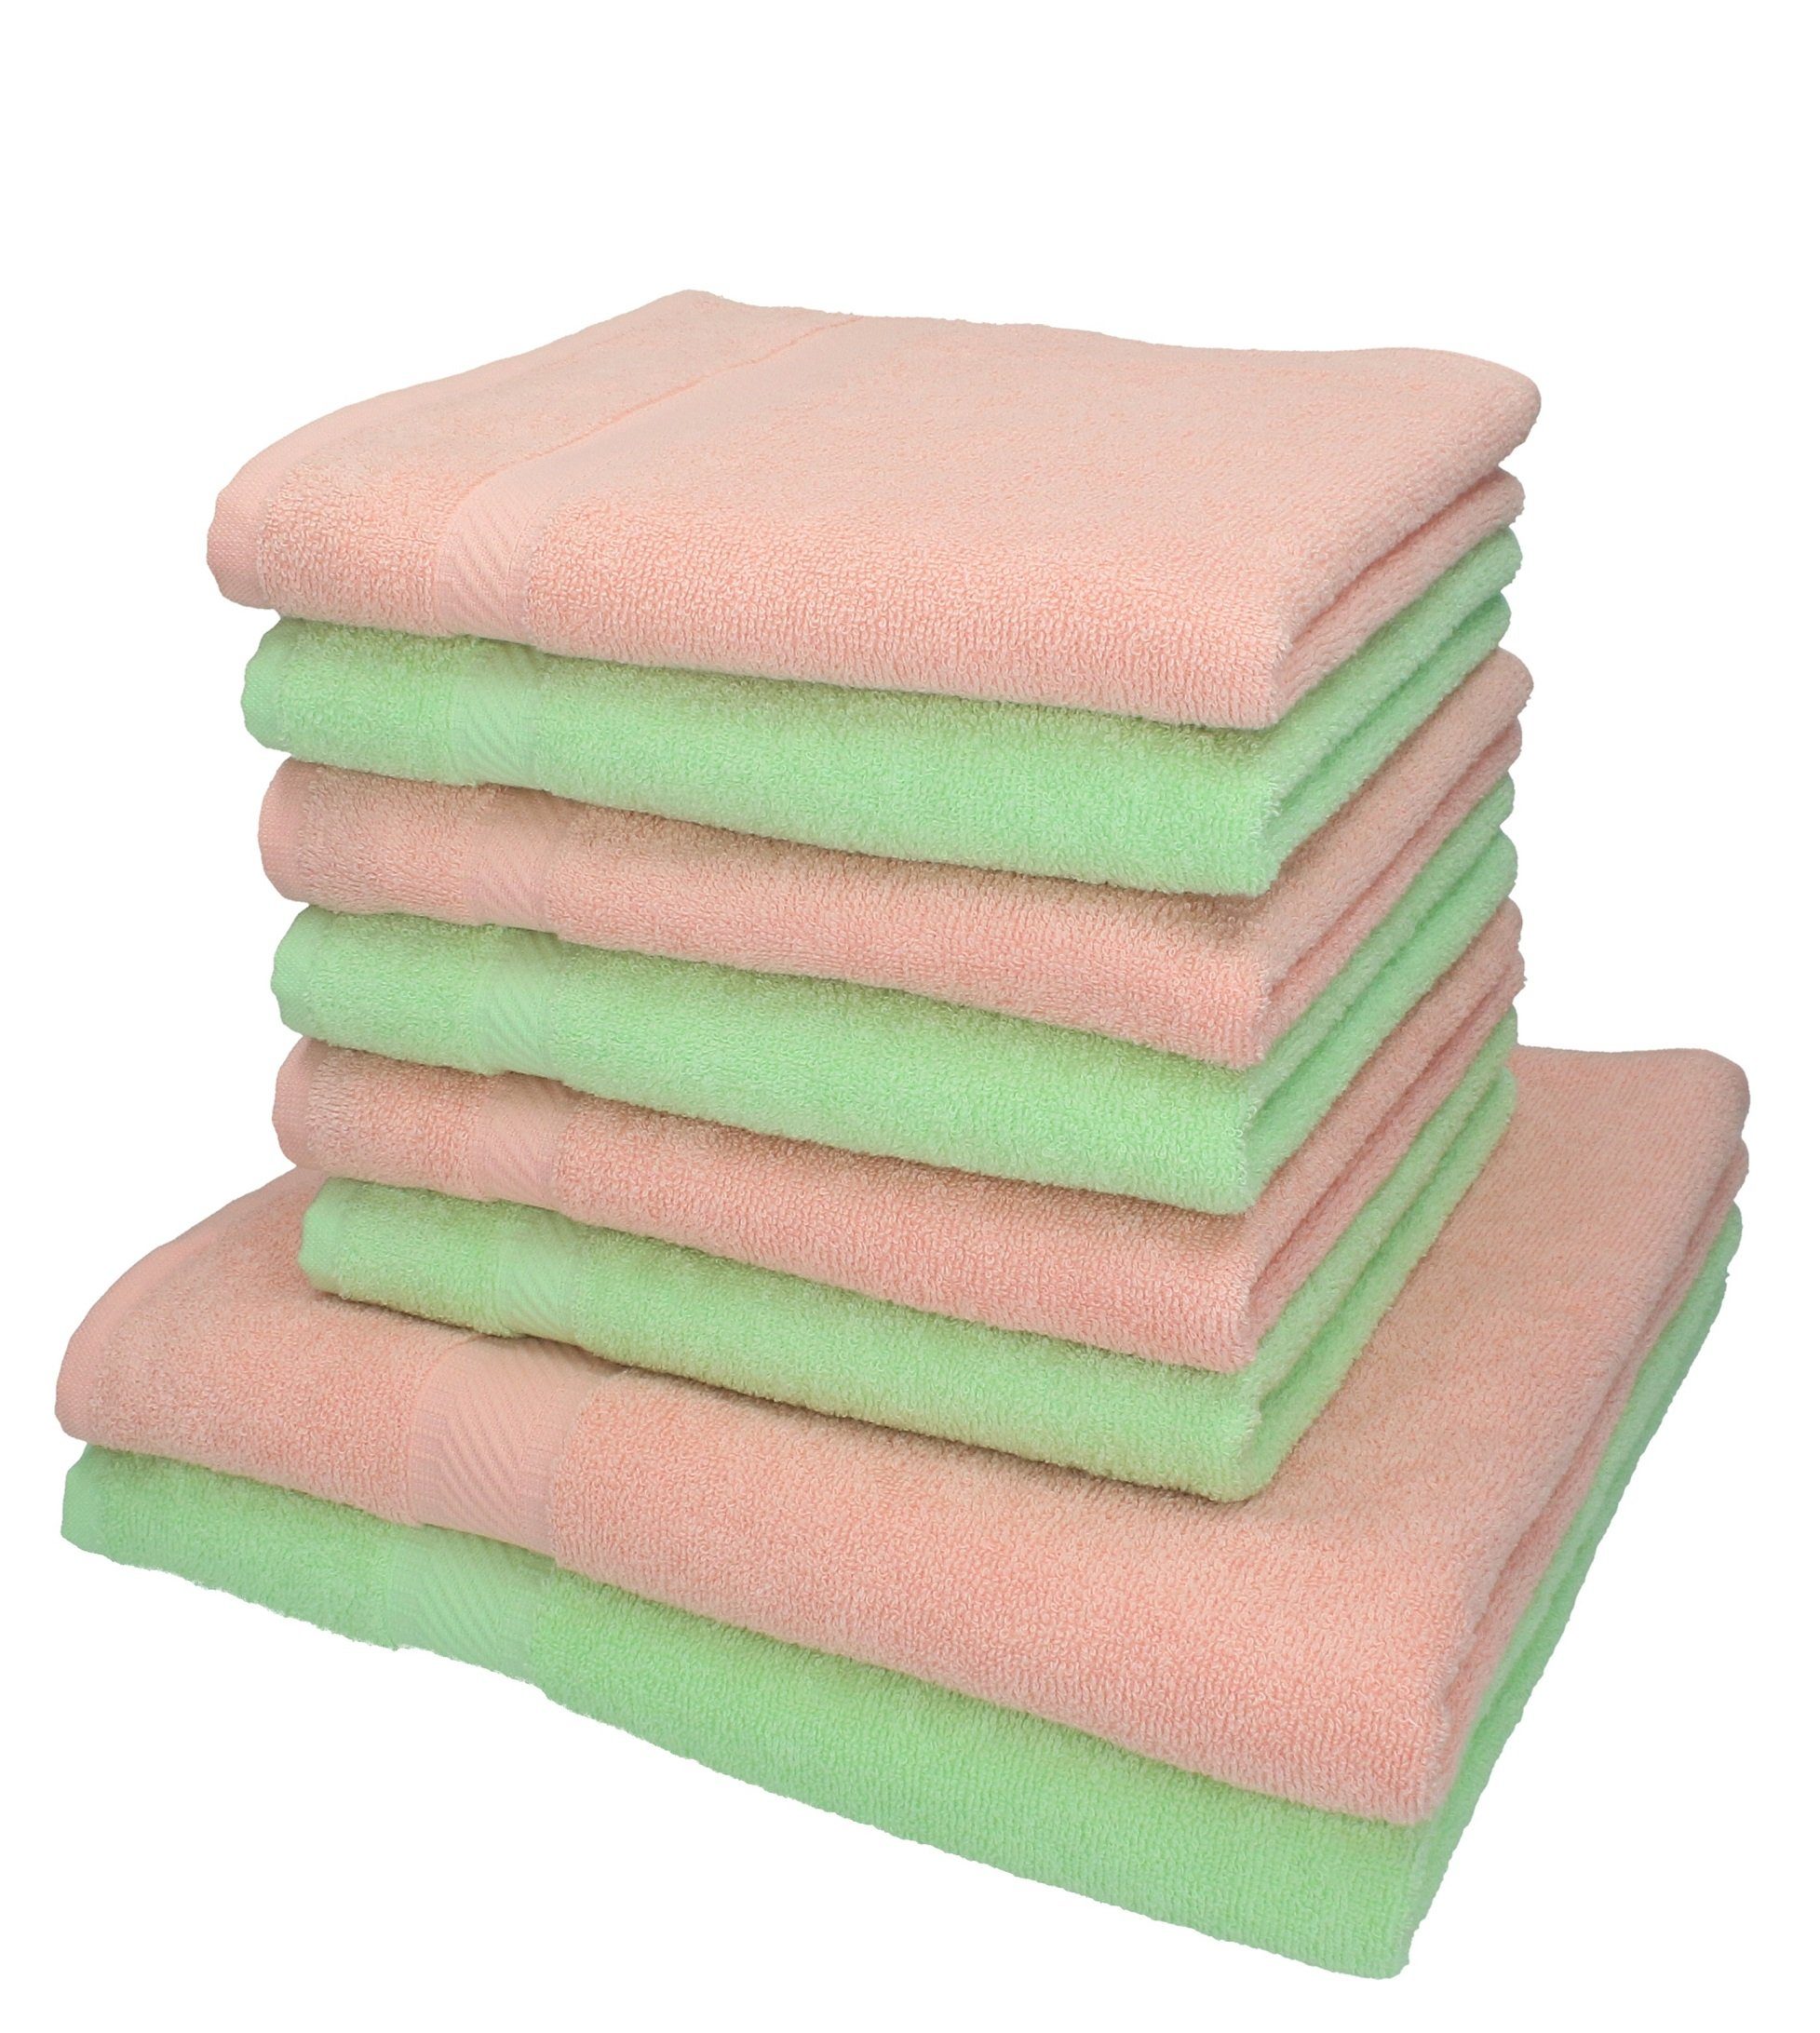 Betz Handtuch Set 8-tlg. Handtuch-Set Palermo Farbe apricot und grün, 100% Baumwolle